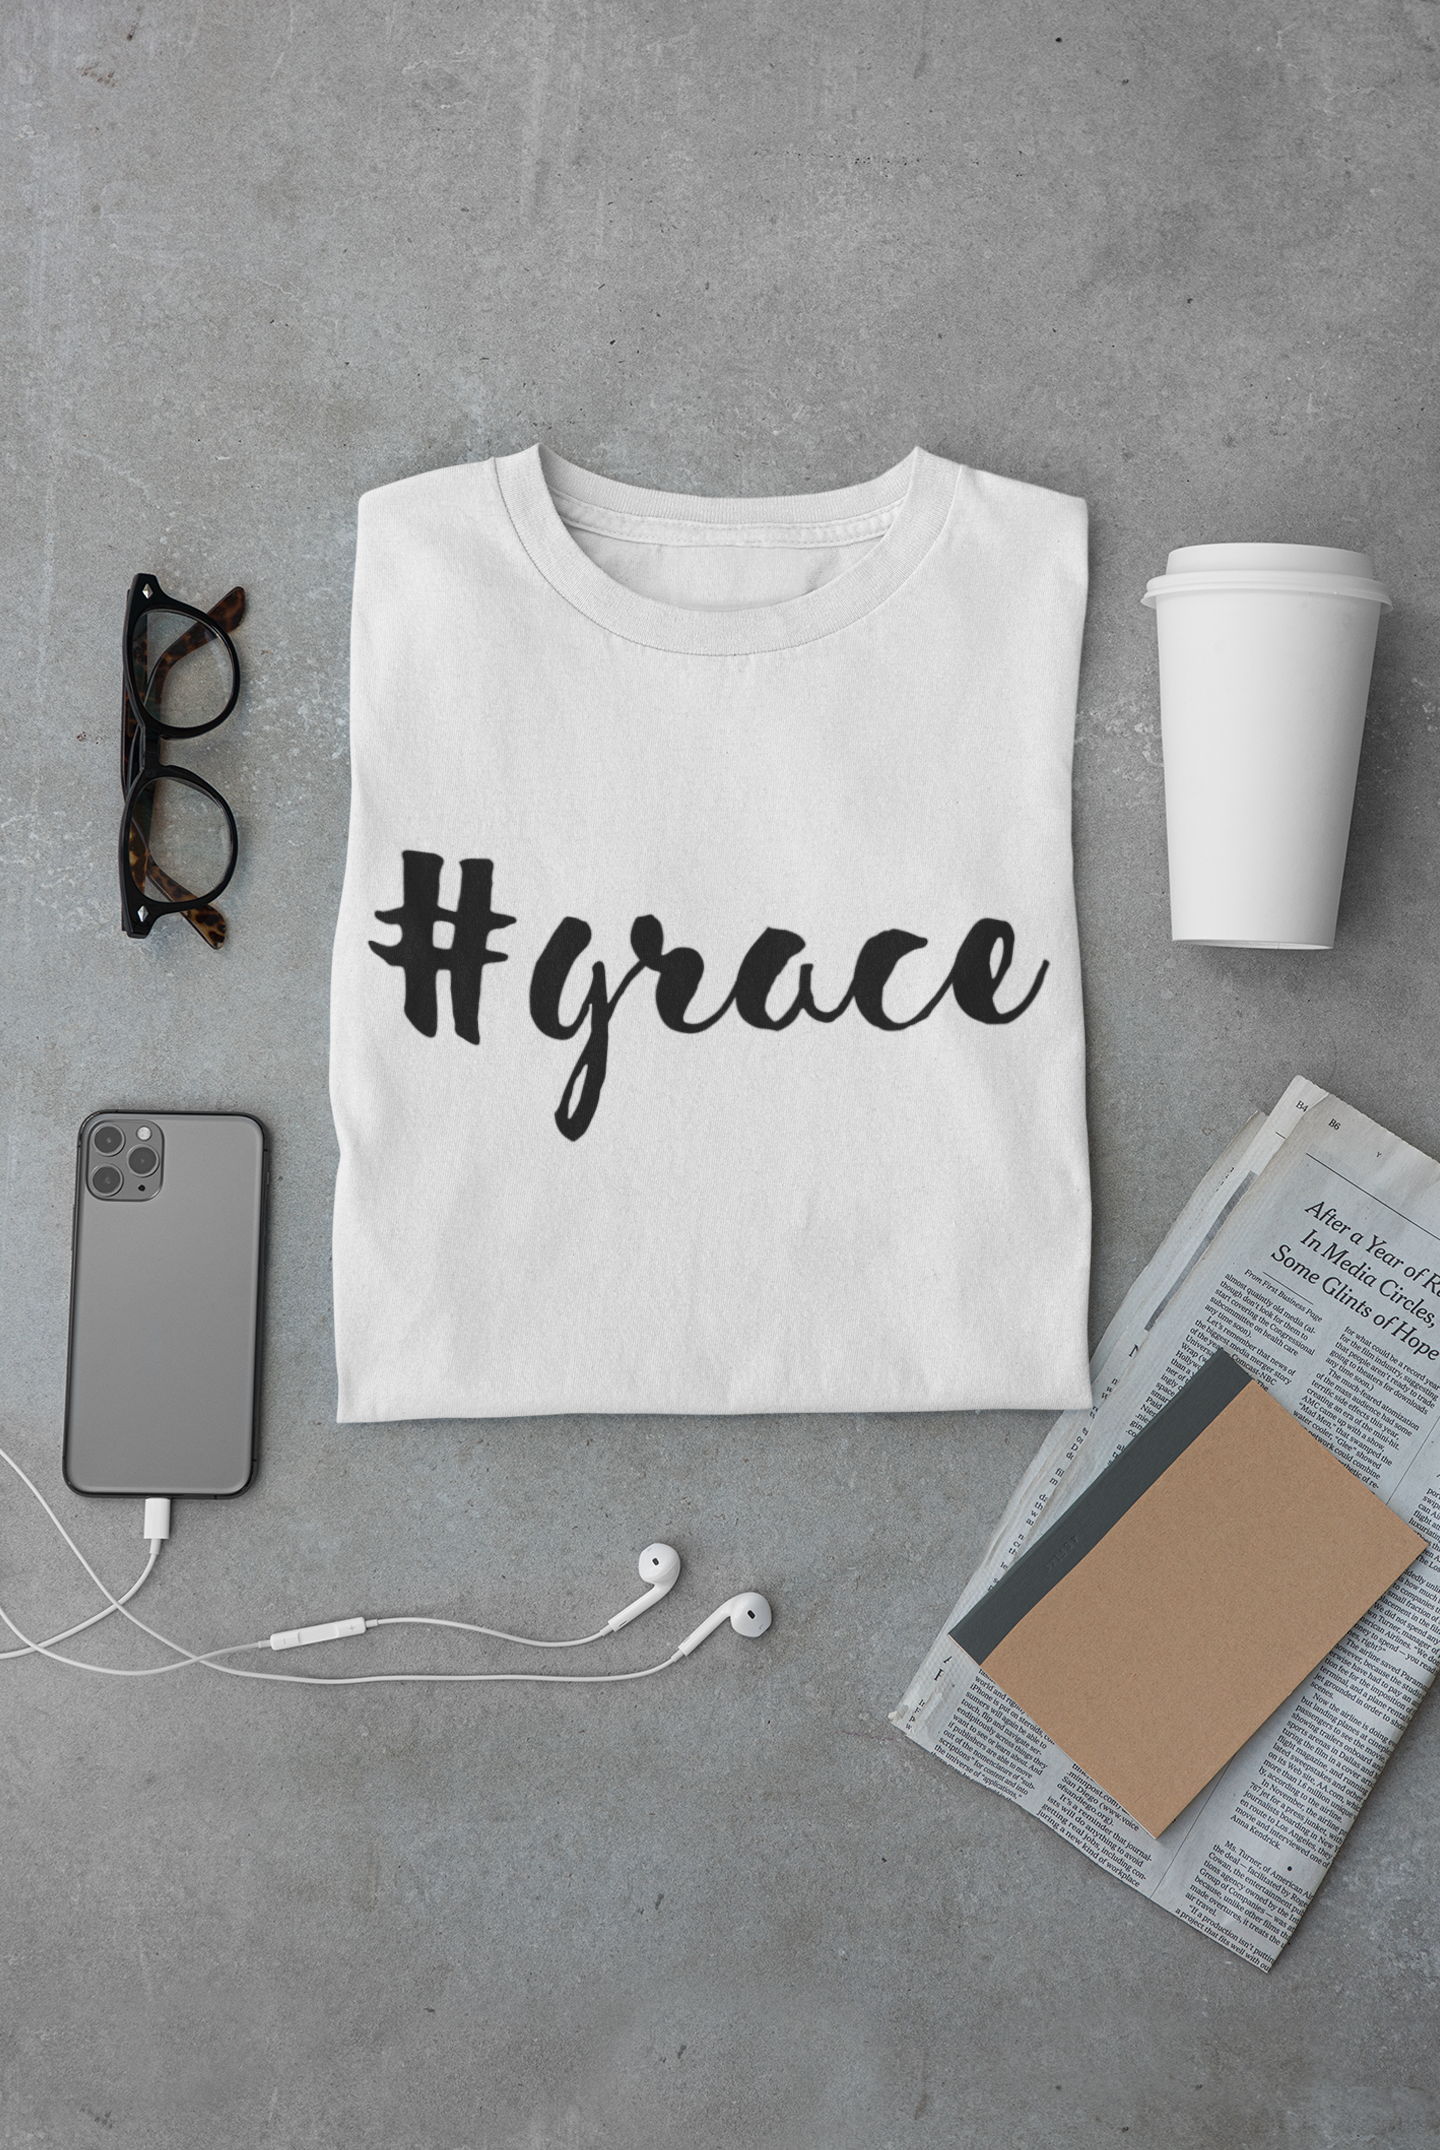 Grace - Christian Short Sleeve Tee